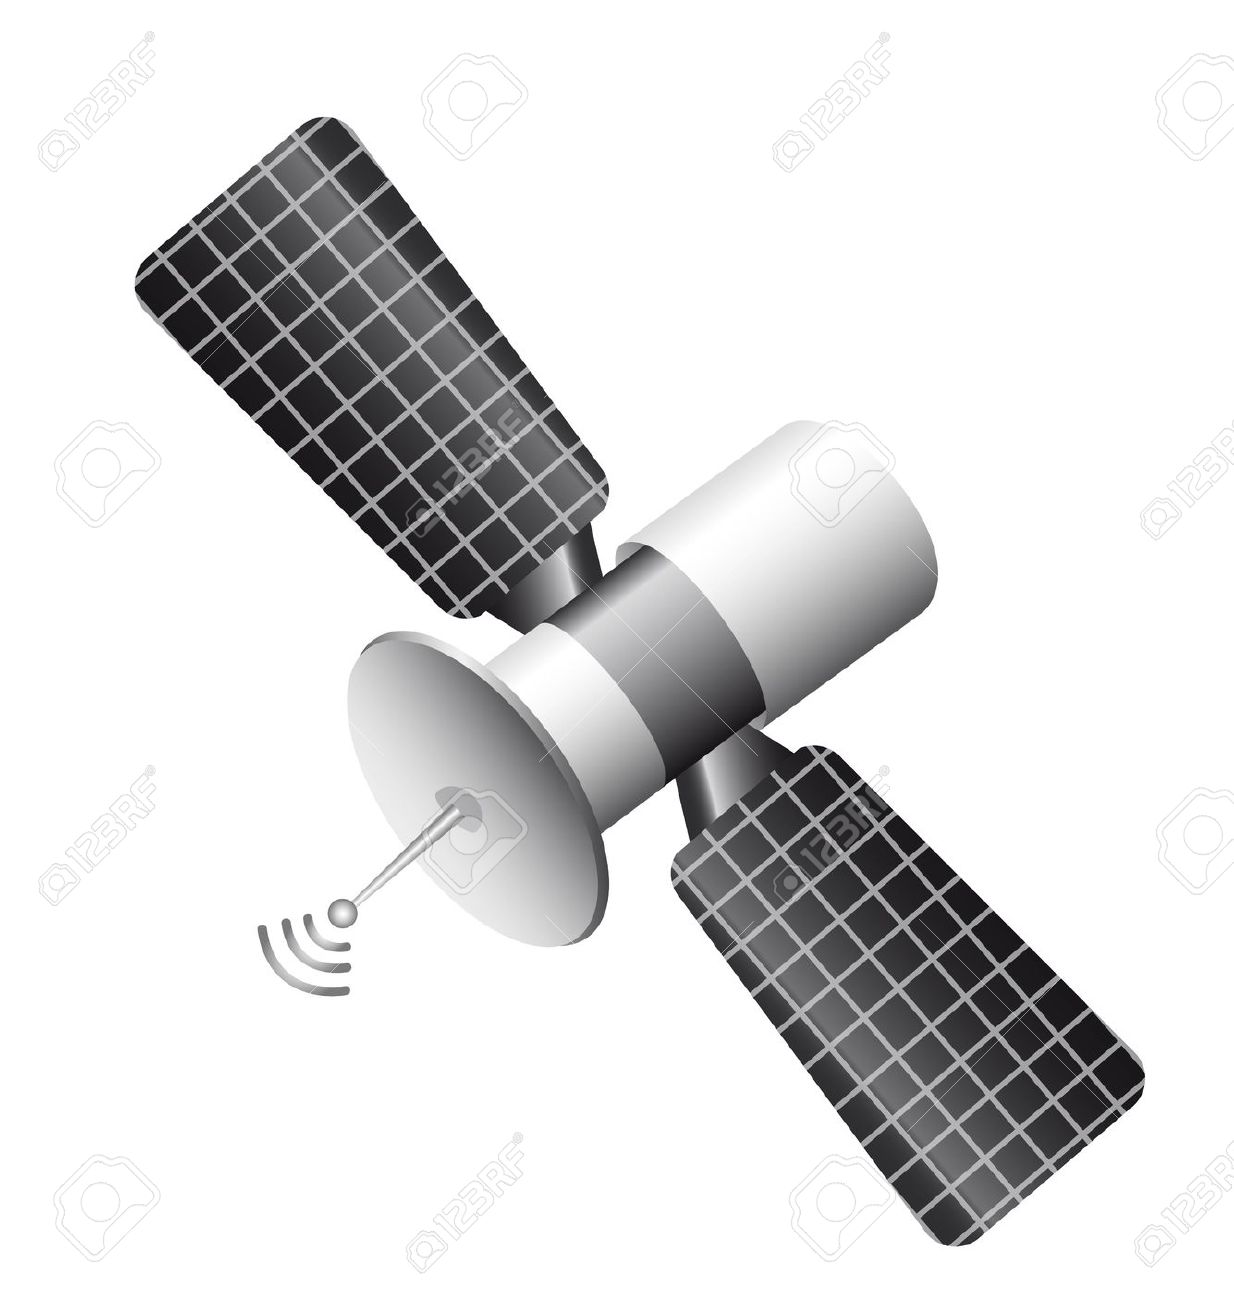 Satelite clipart #12, Download drawings